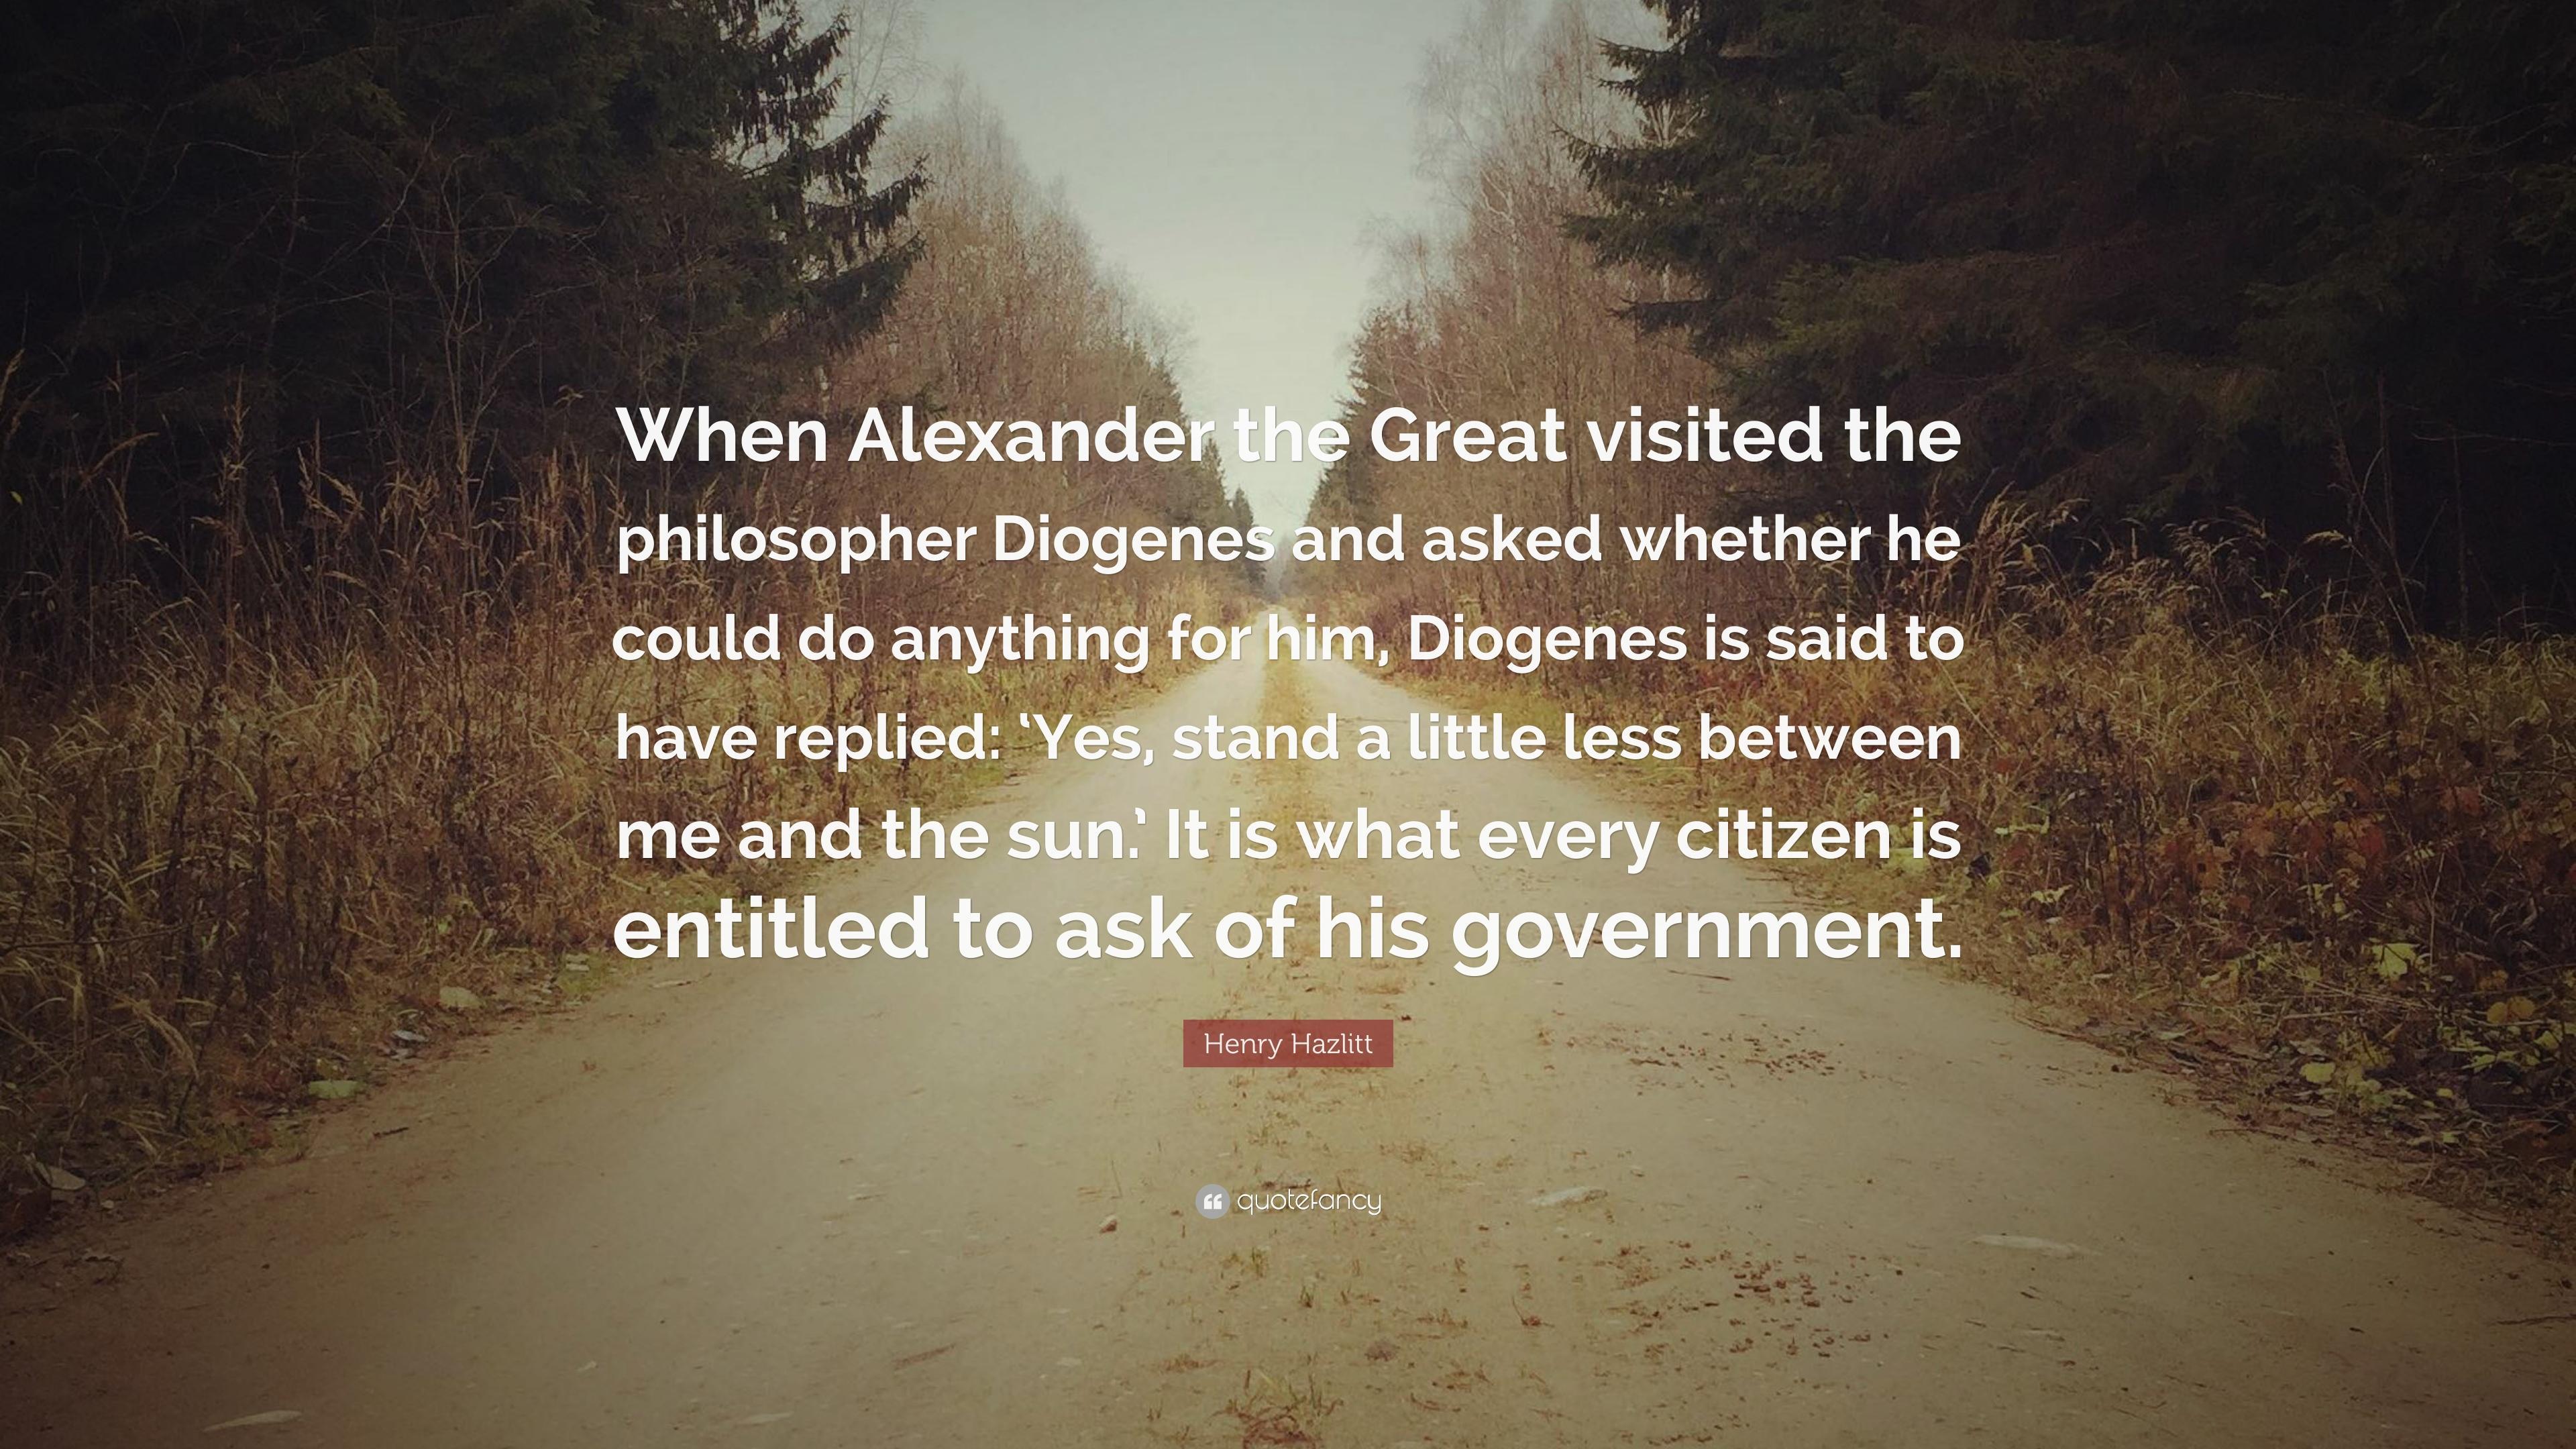 Henry Hazlitt Quote: “When Alexander the Great visited